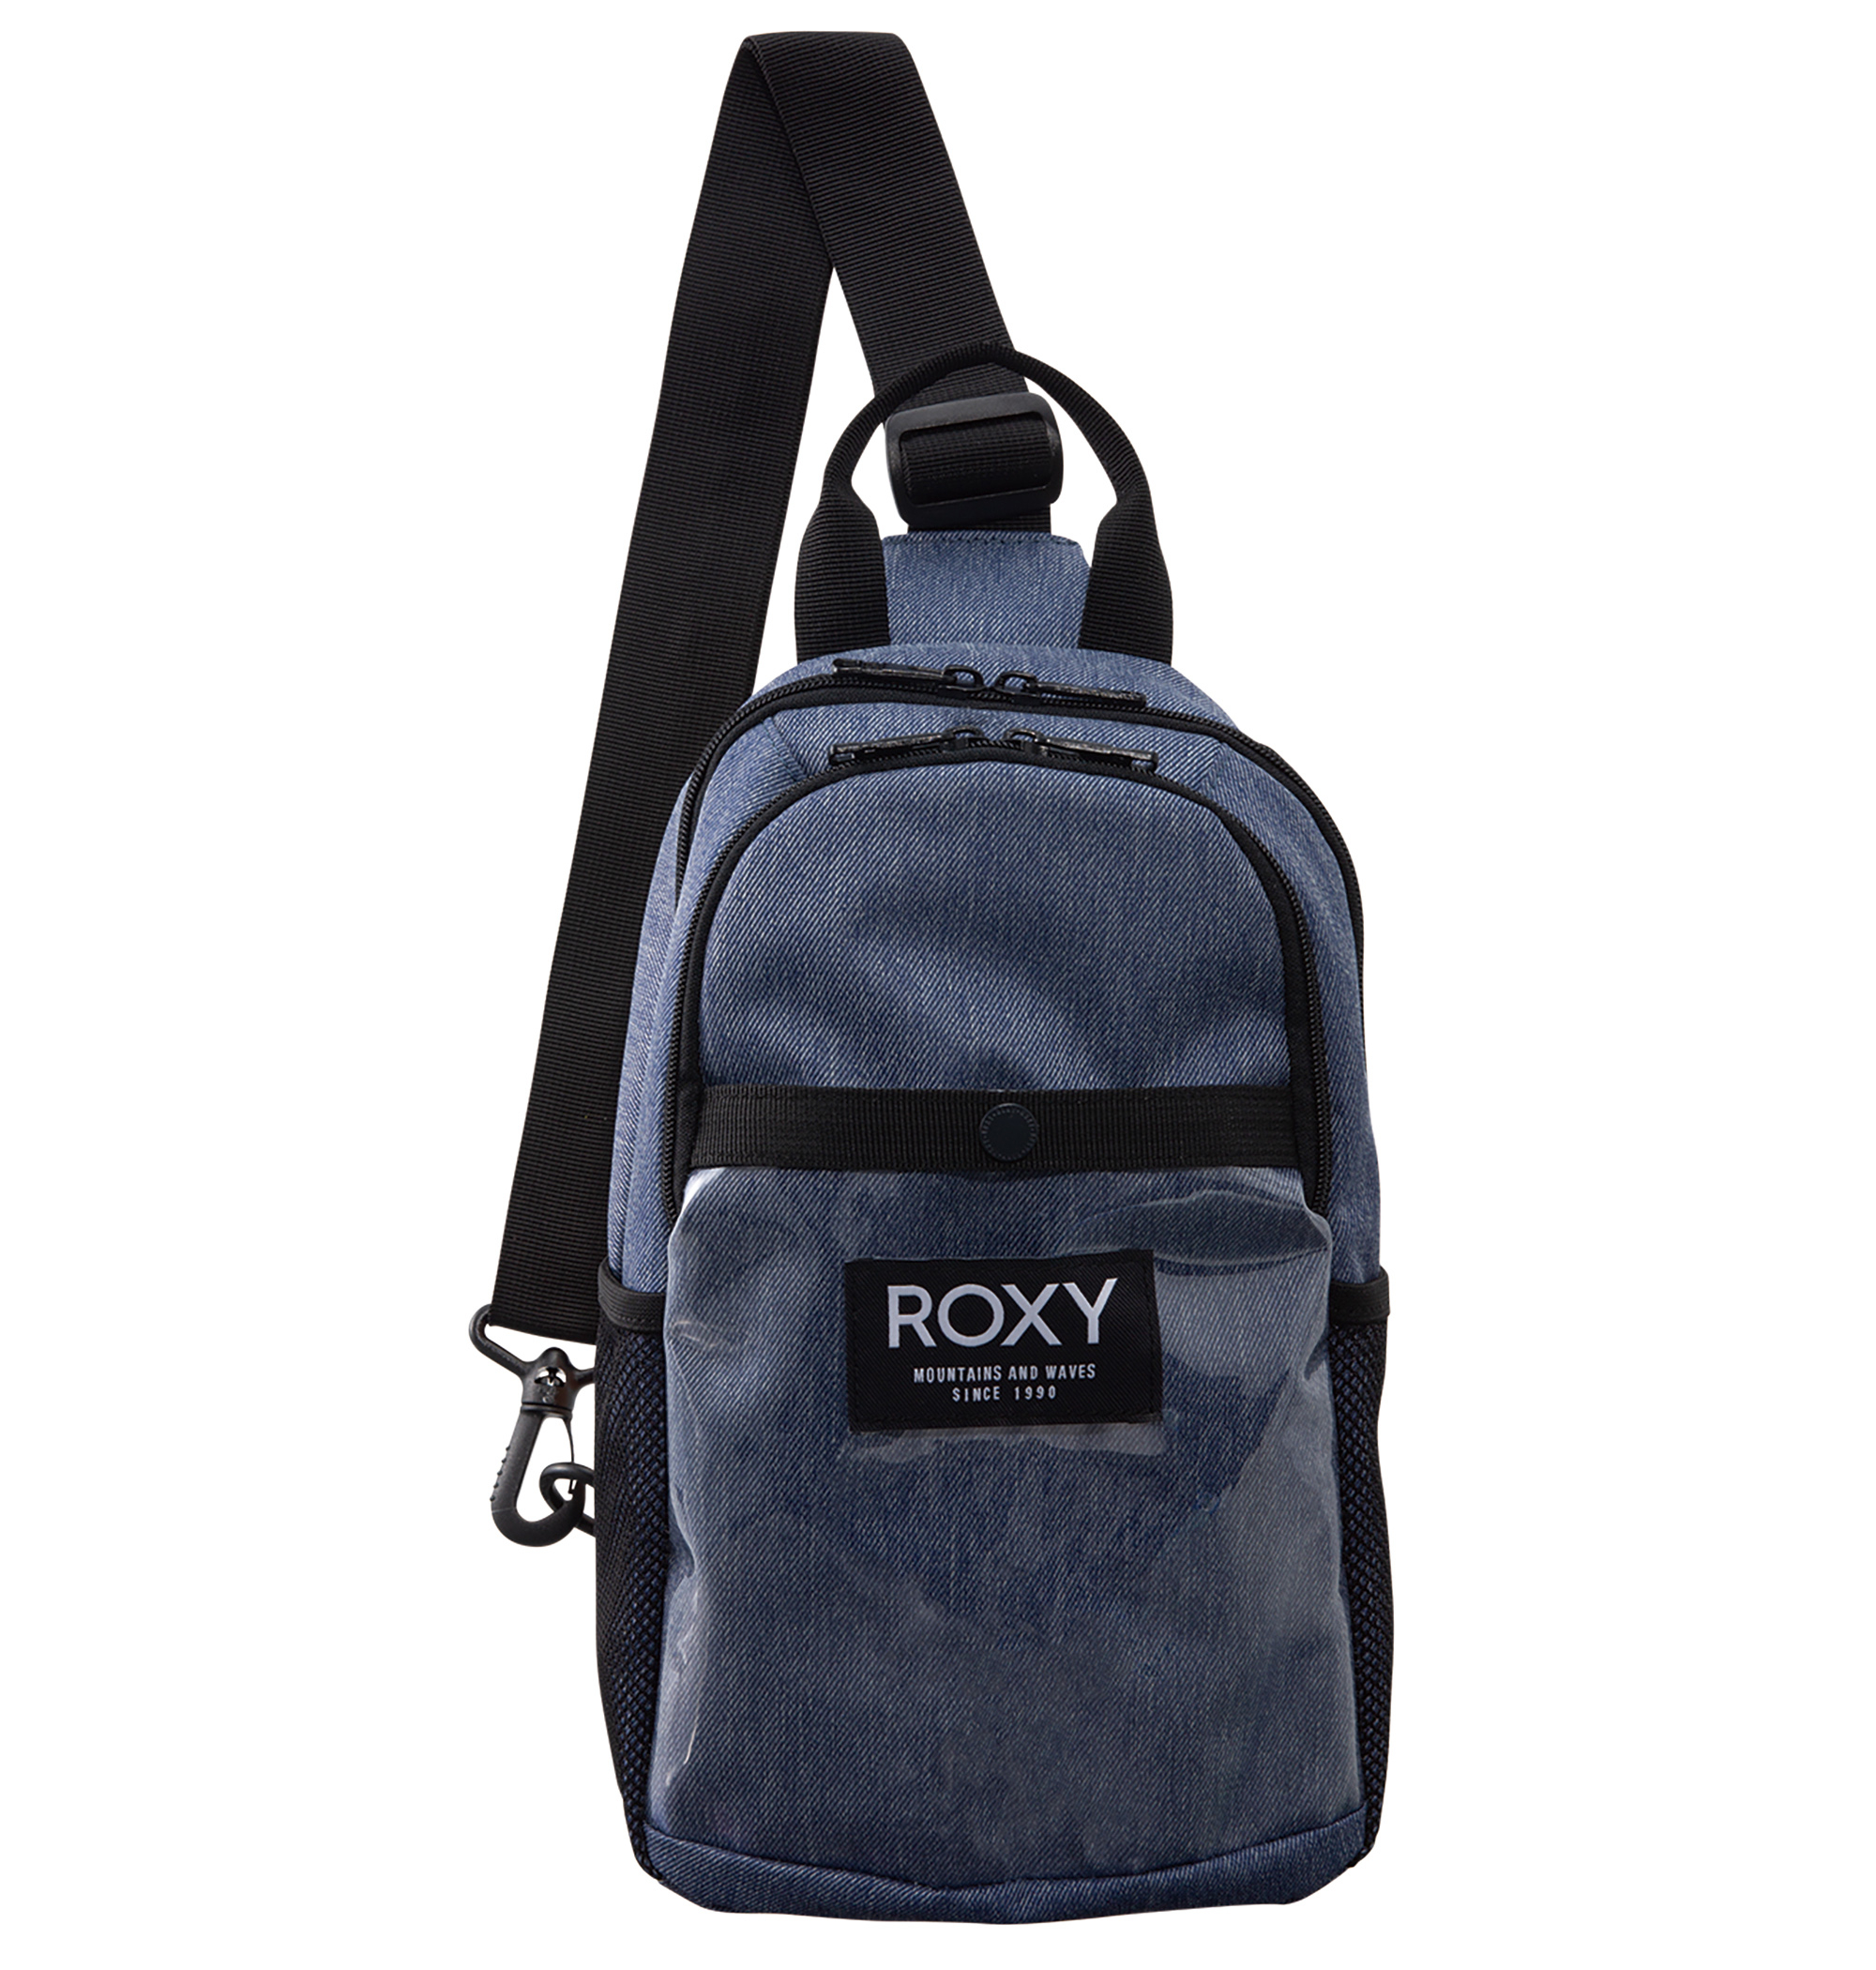 ＜Roxy＞BUTTER UP コンパクトなサイズながらマチやポケットがあり、安心感のある収納力が魅力的な斜めがけバッグ画像